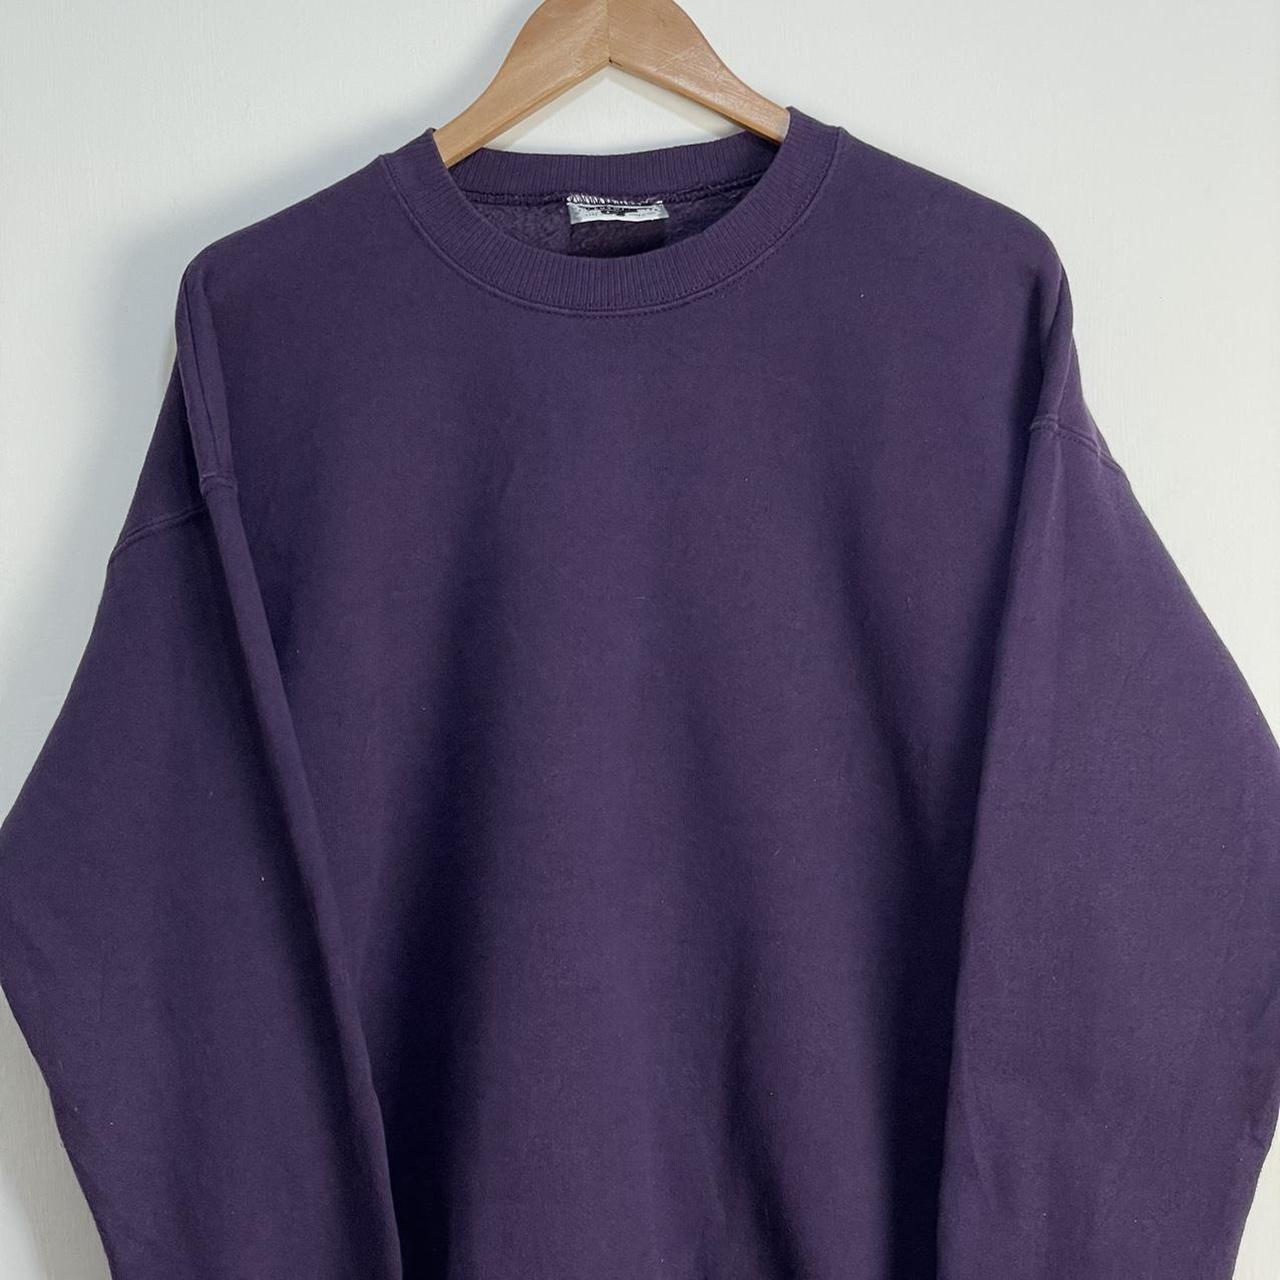 Vintage Mens Lee Heavyweight Purple Sweatshirt L... - Depop